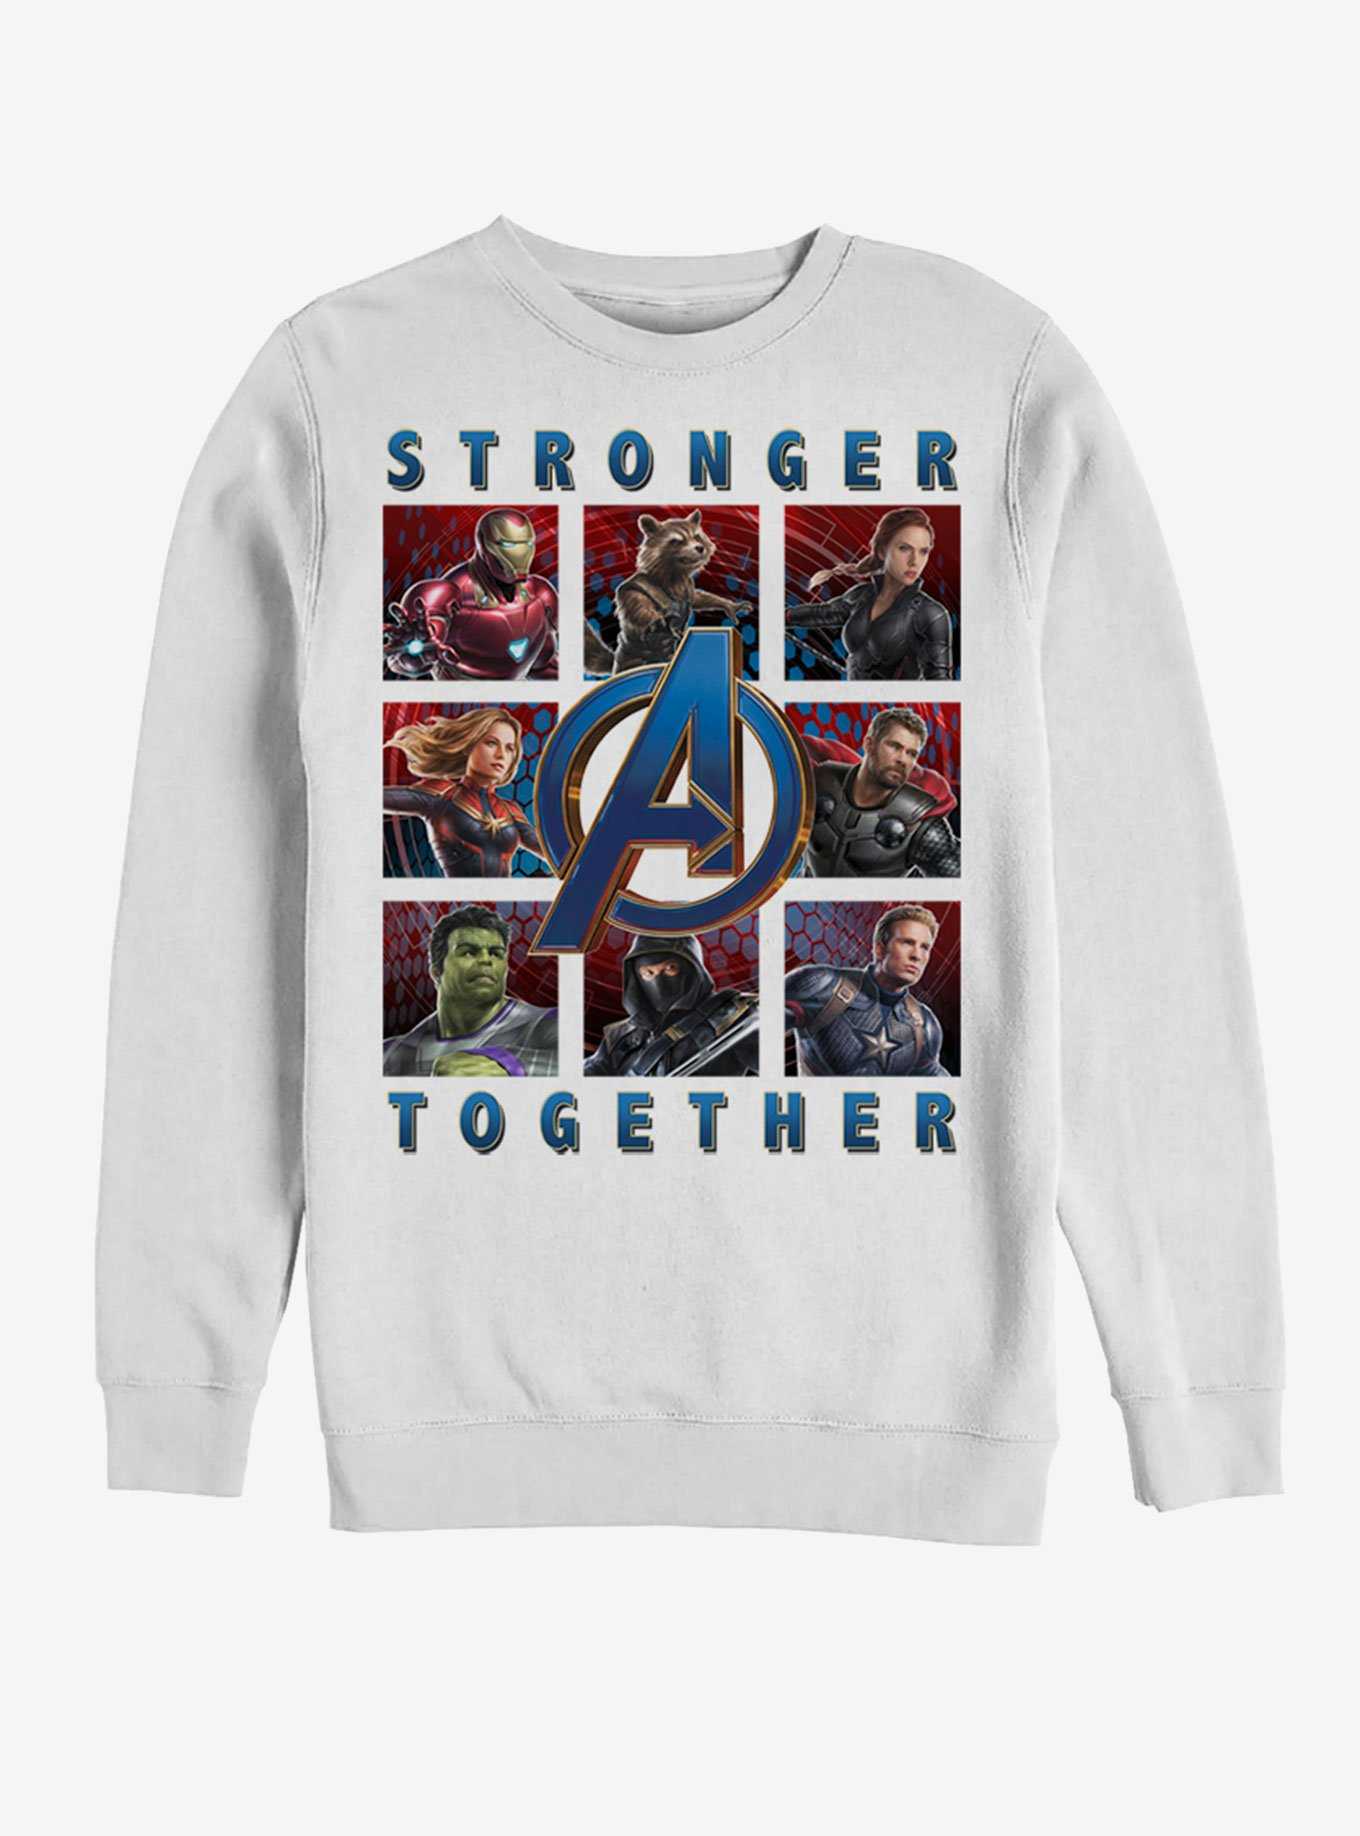 Marvel Avengers: Endgame Boxes Full of Avengers Sweatshirt, , hi-res